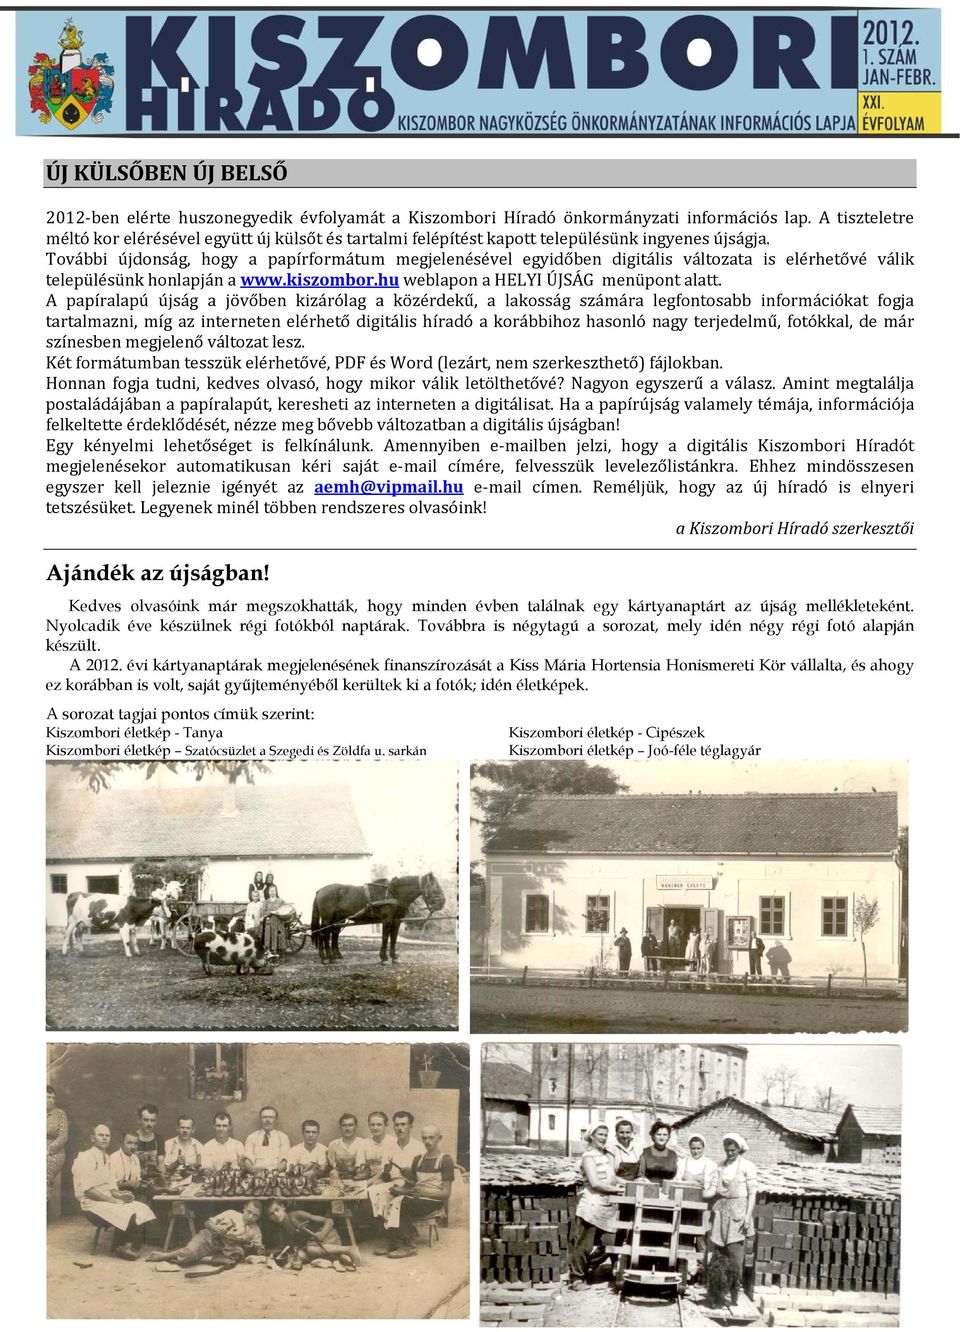 További újdonság, hogy a papírformátum megjelenésével egyidőben digitális változata is elérhetővé válik településünk honlapján a www.kiszombor.hu weblapon a HELYI ÚJSÁG menüpont alatt.